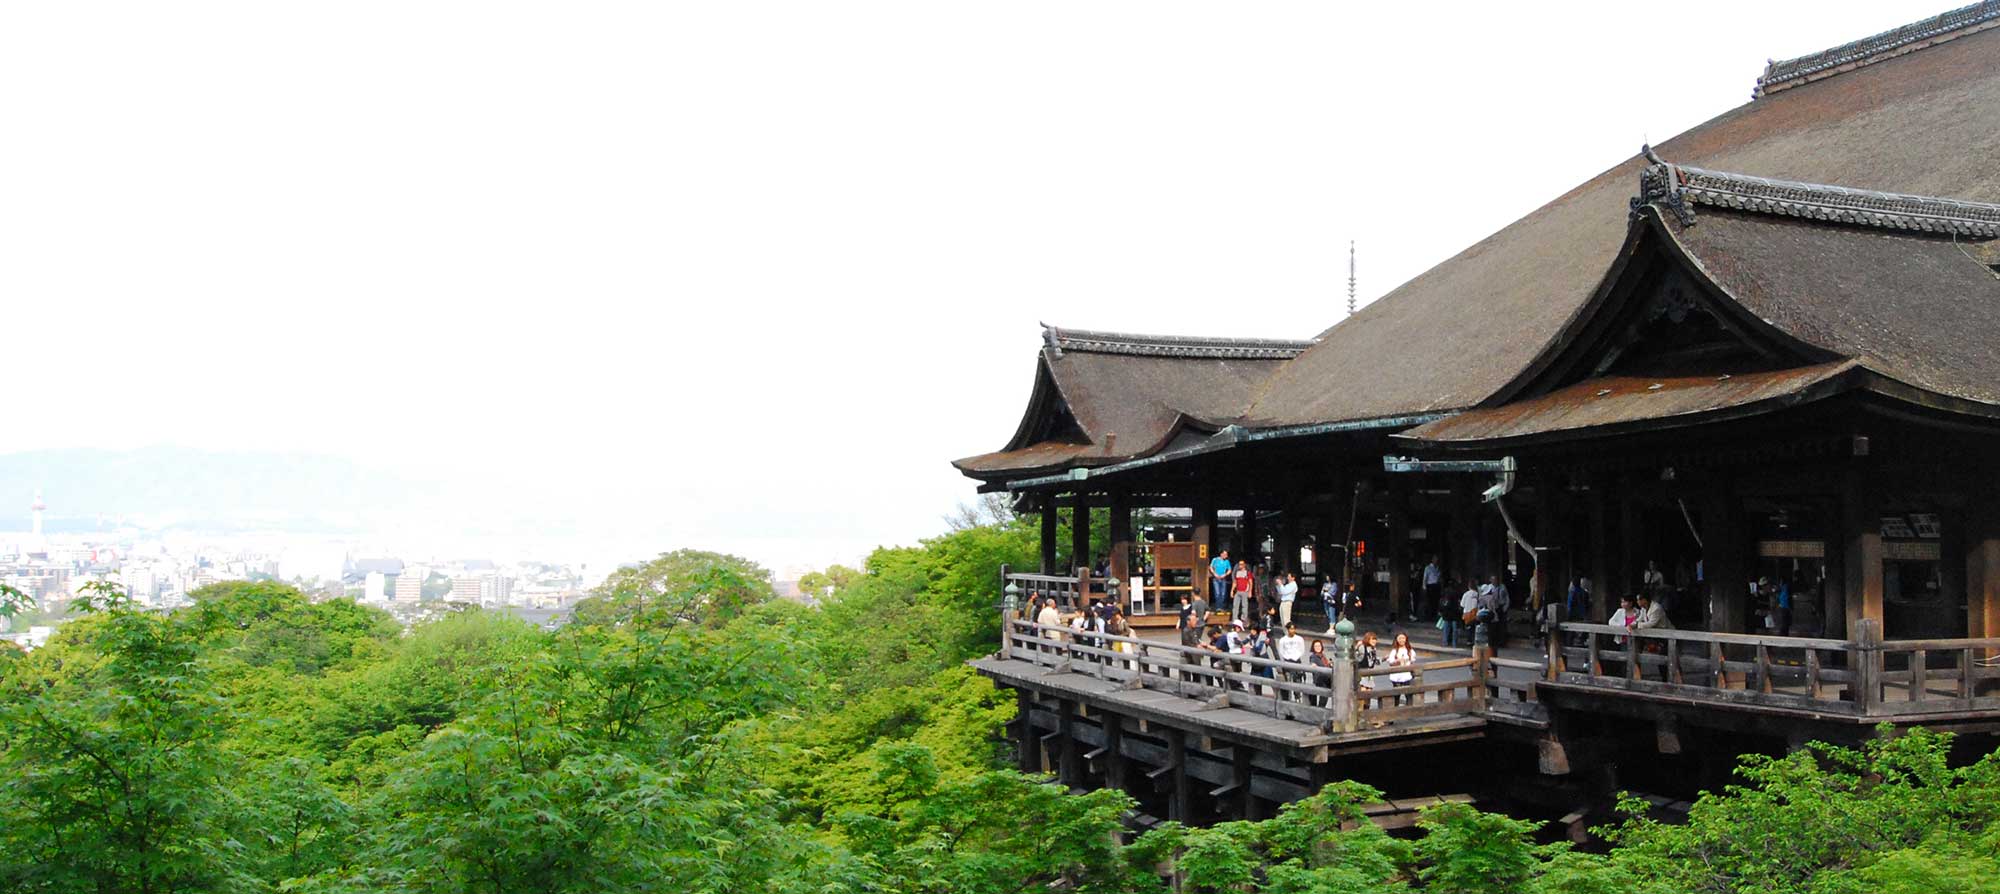 Вид на храм Чистой воды, Киёмидзу Дэра, в Киото